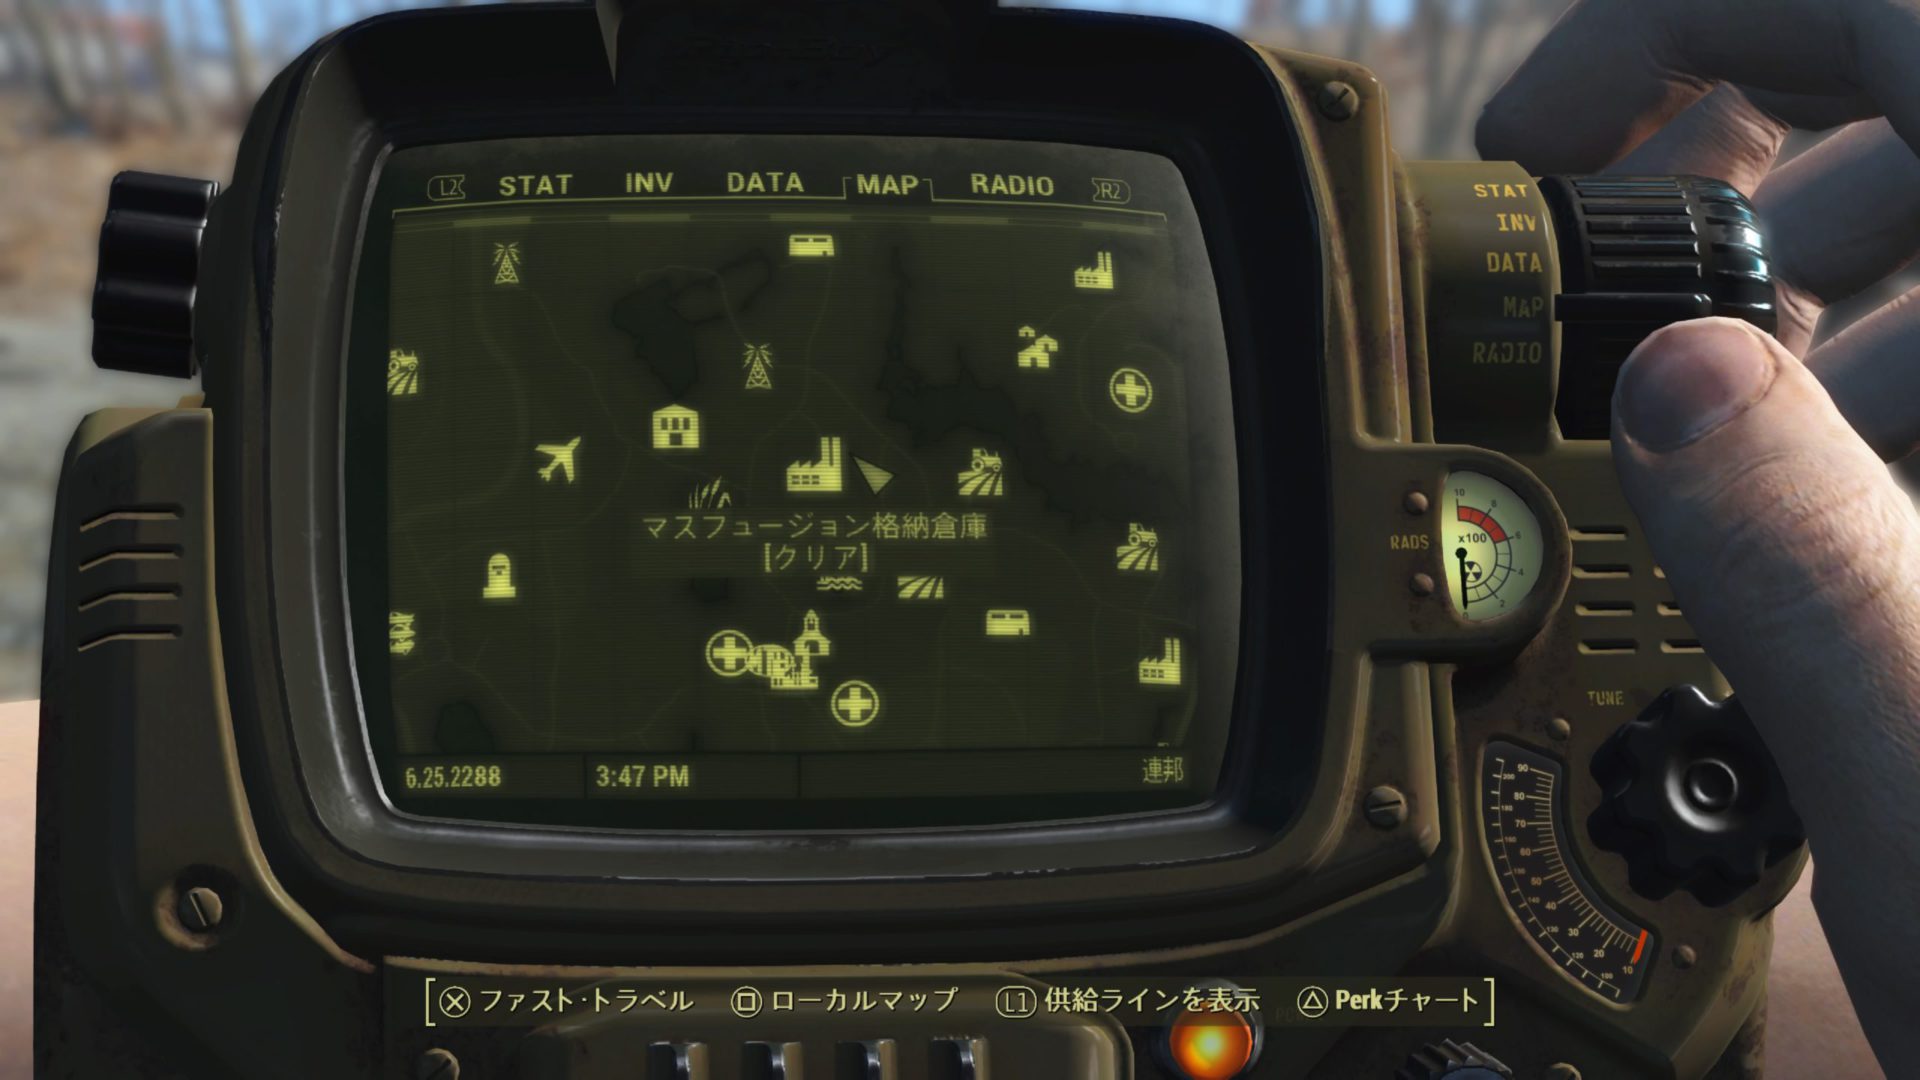 マスフュージョン格納倉庫 Fallout4攻略フォルダ